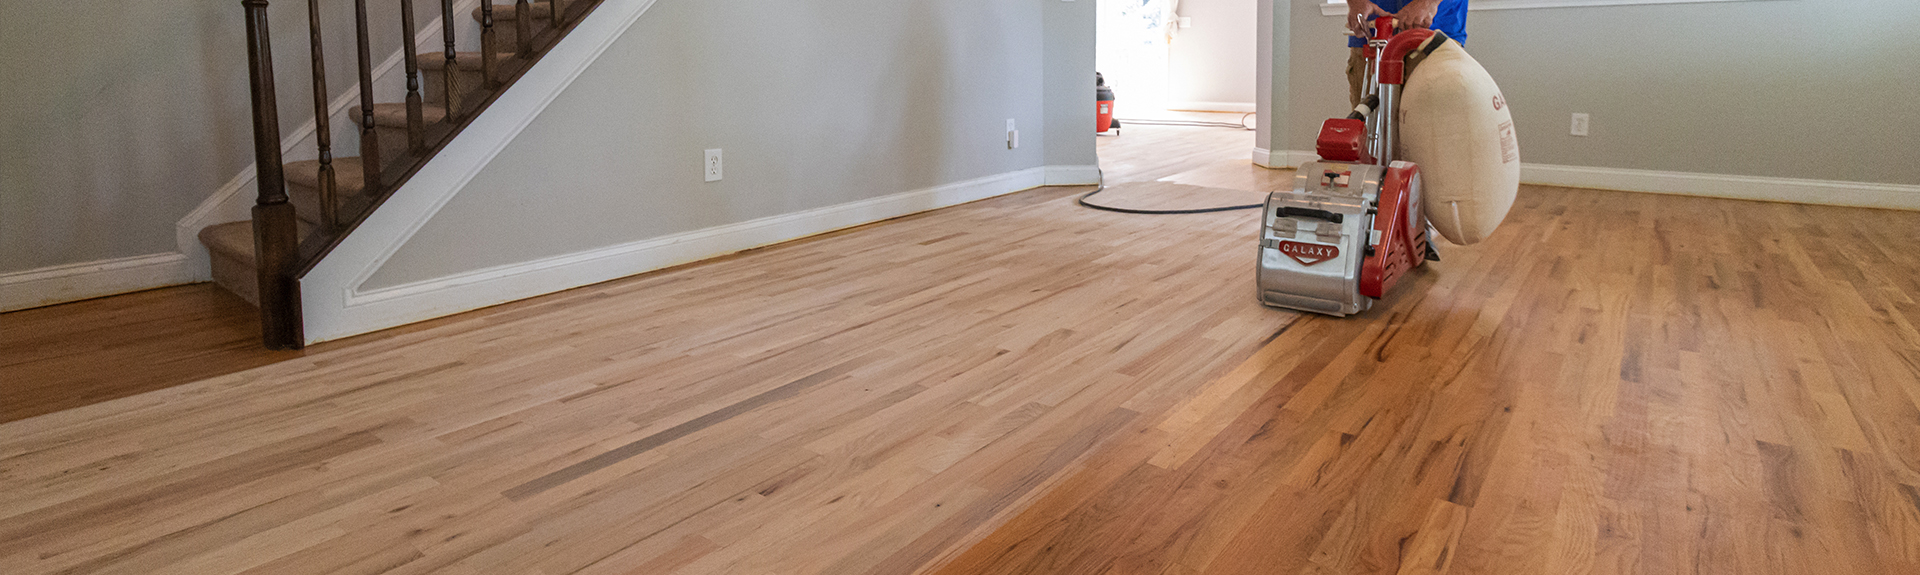 Hardwood Floor Cleaning - Floor Pro Carpet Cleaners Lexington SC